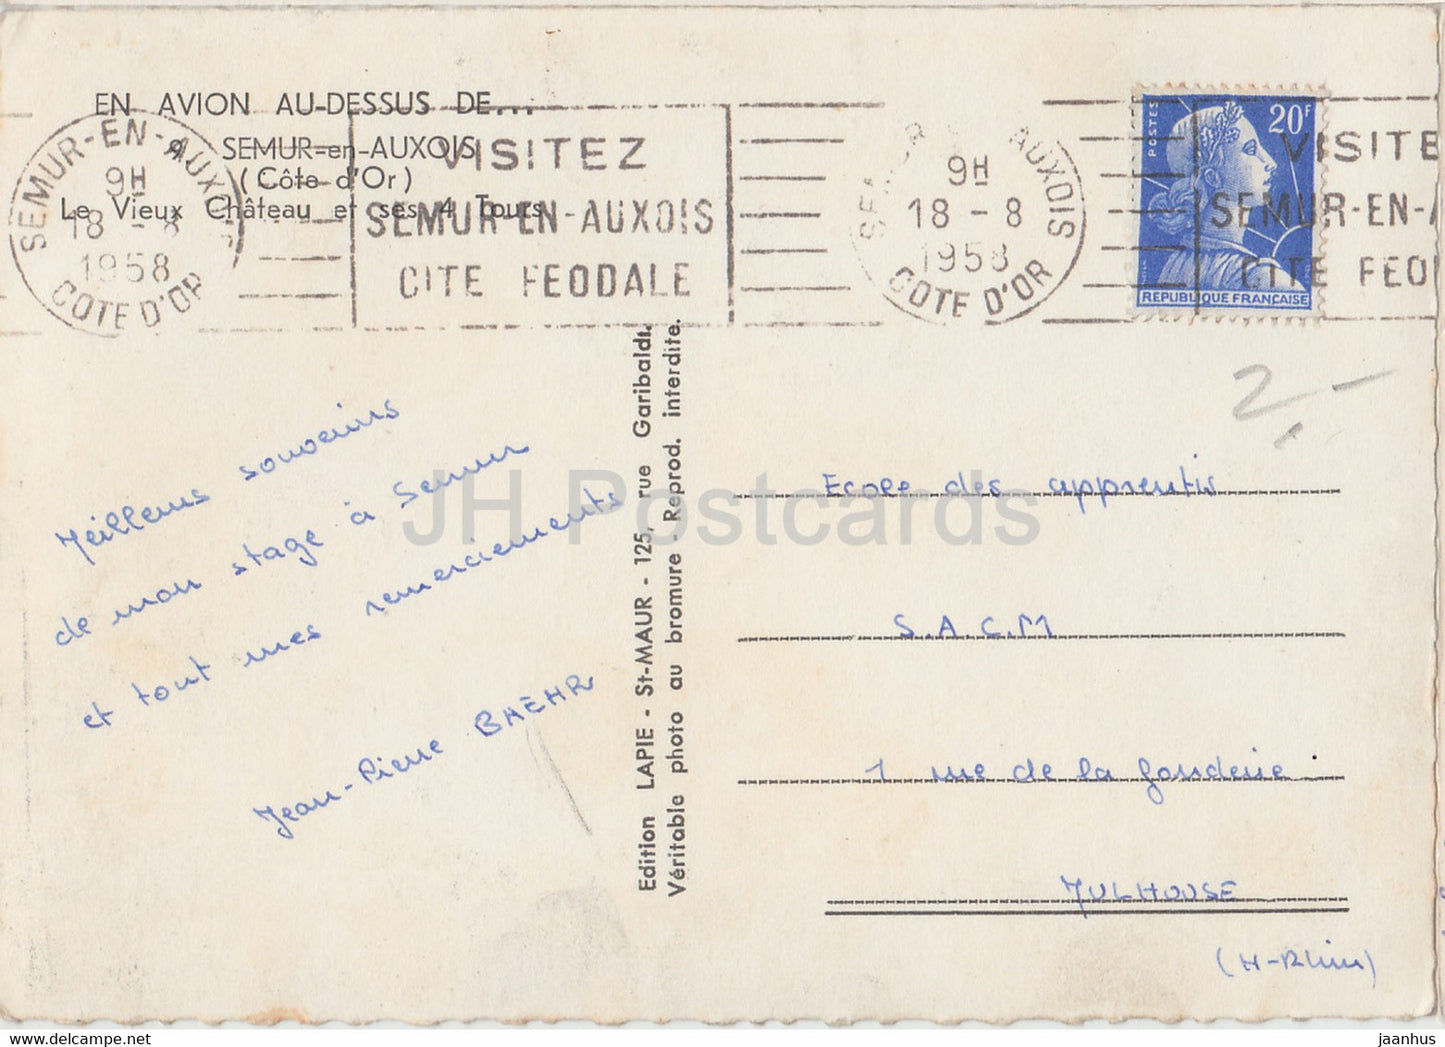 Semur en Auxois - Le Vieux Chateau et ses 4 Tours - En Avion Au Dessus De - carte postale ancienne - 1958 - France - occasion